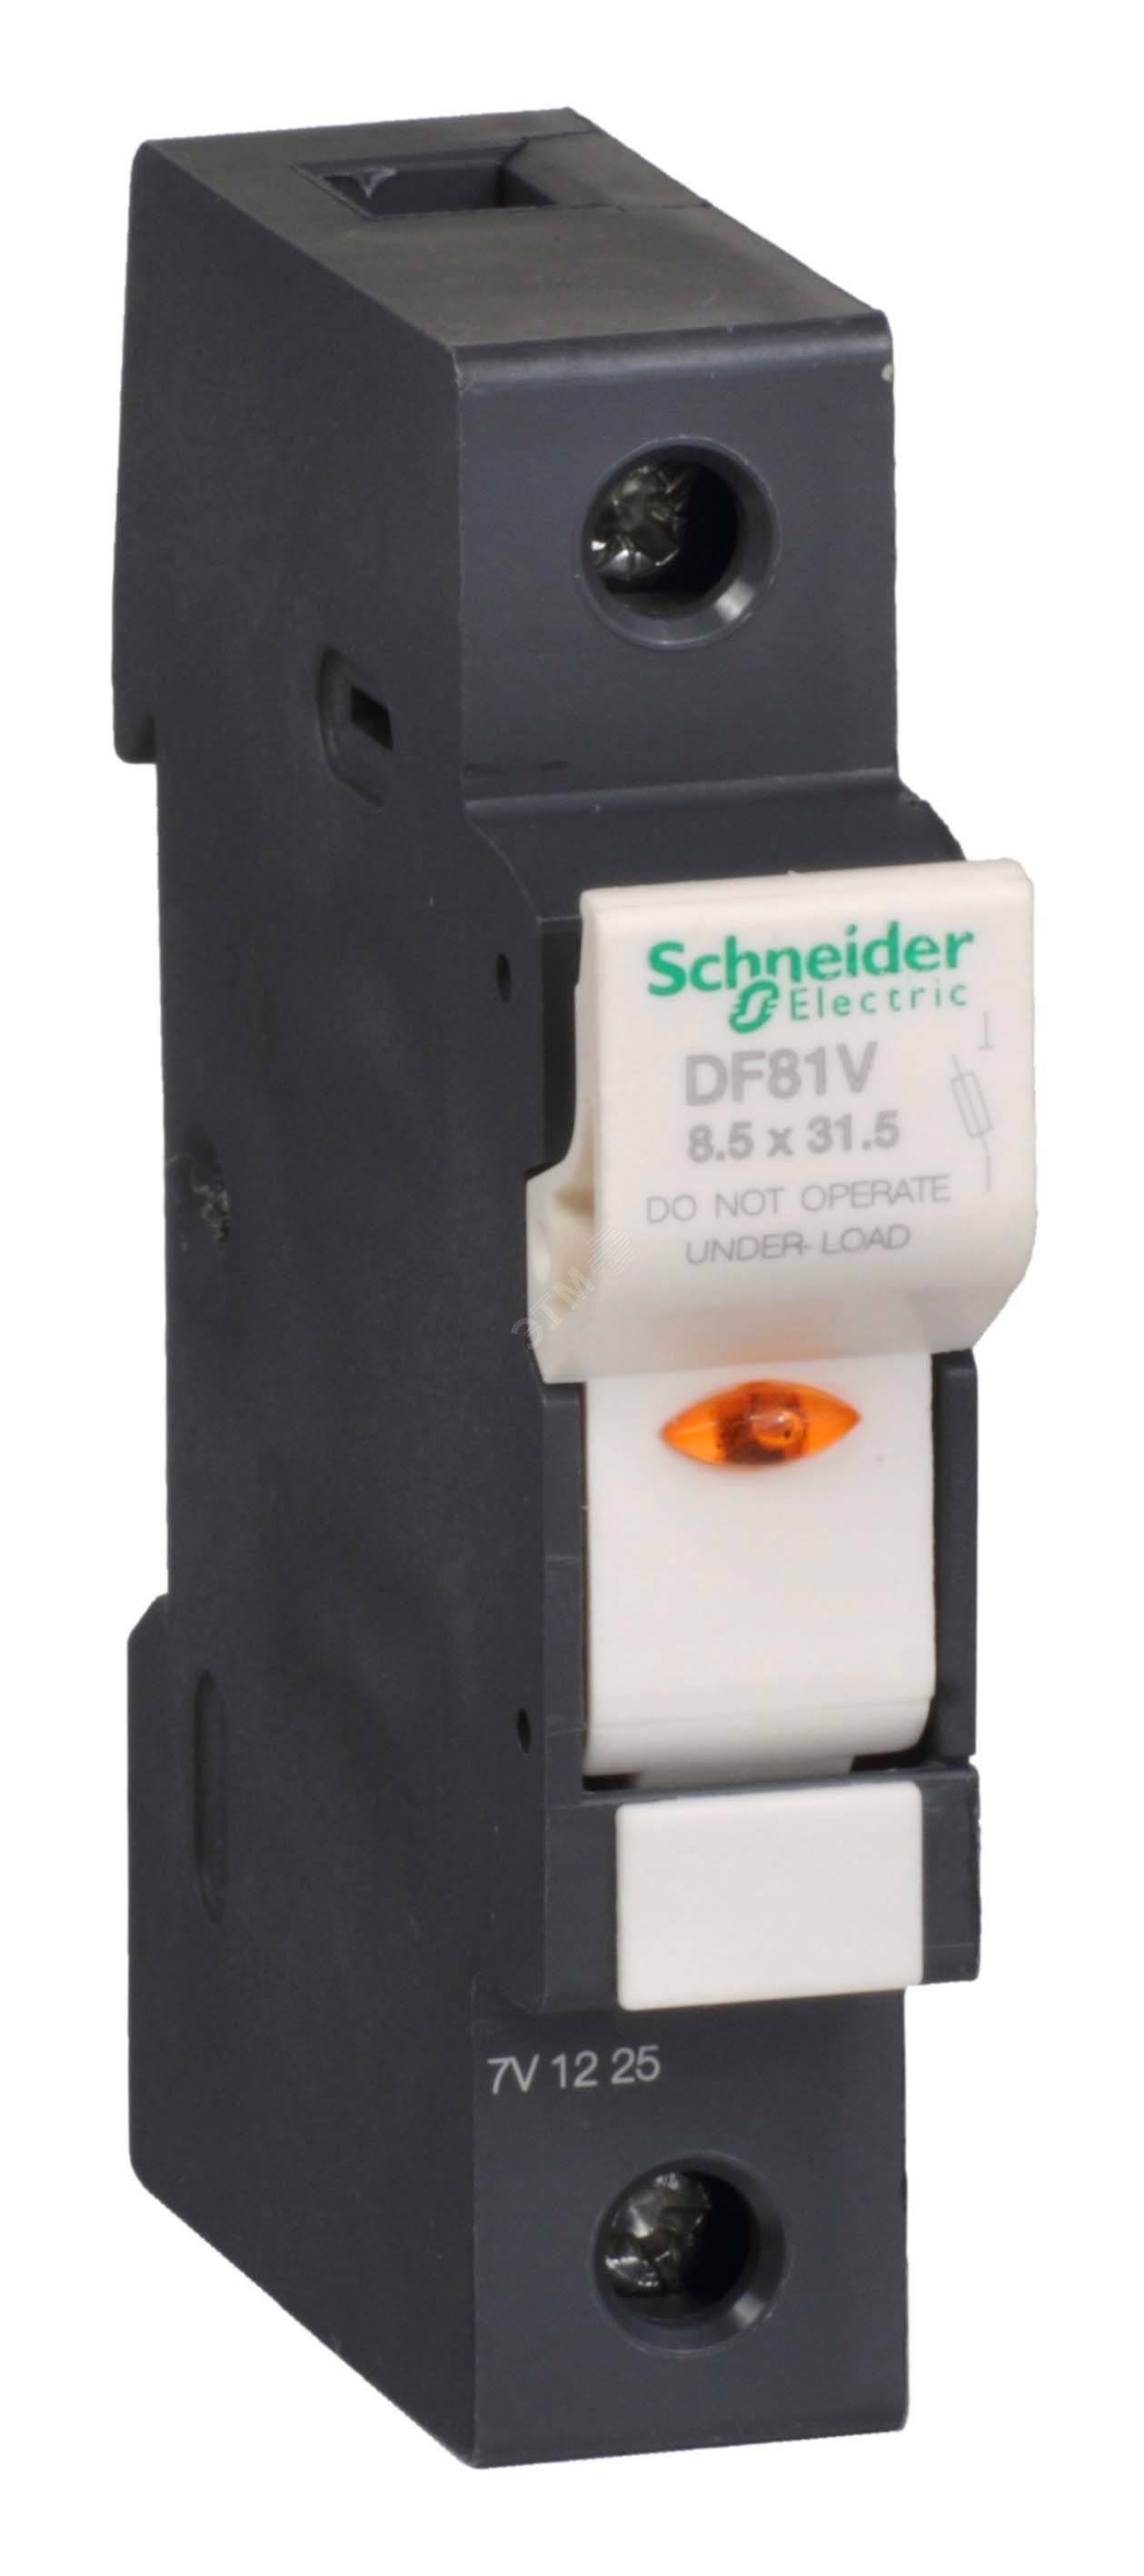 Разъединитель-предохранитель 25A указатель срабатывания 1п 8.5х31.5 DF81V Schneider Electric - превью